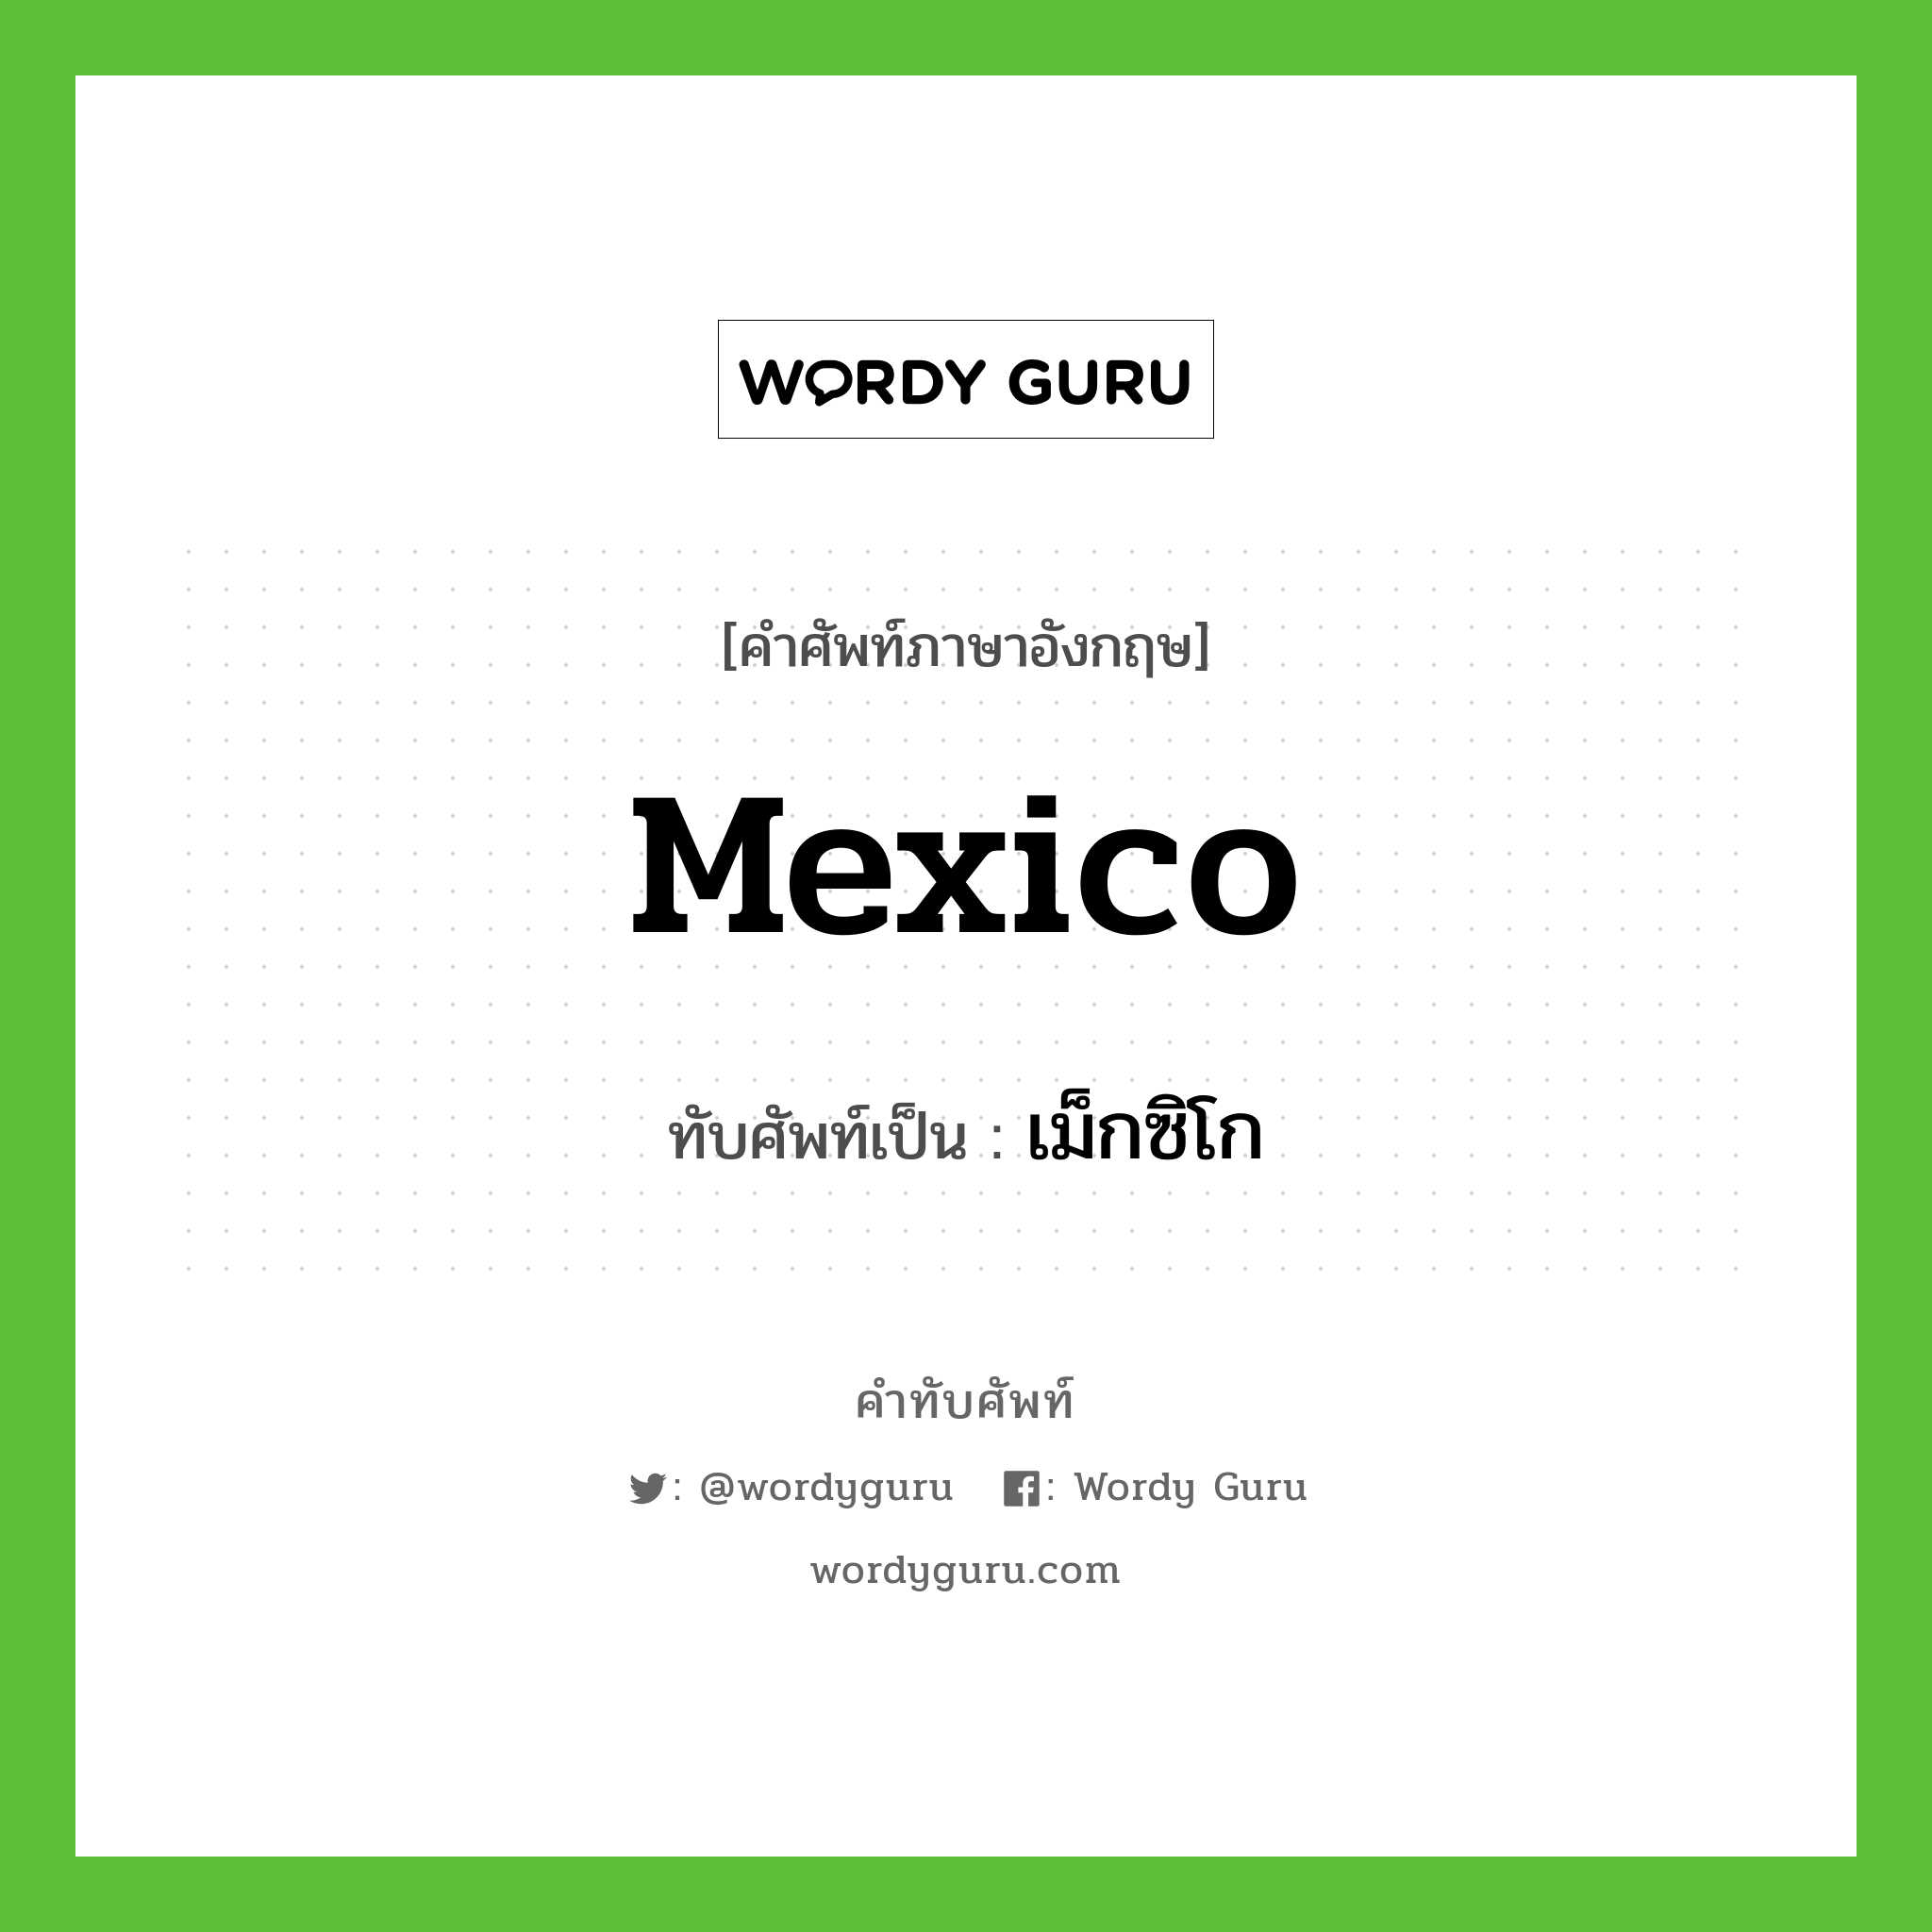 เม็กซิโก เขียนอย่างไร?, คำศัพท์ภาษาอังกฤษ เม็กซิโก ทับศัพท์เป็น Mexico